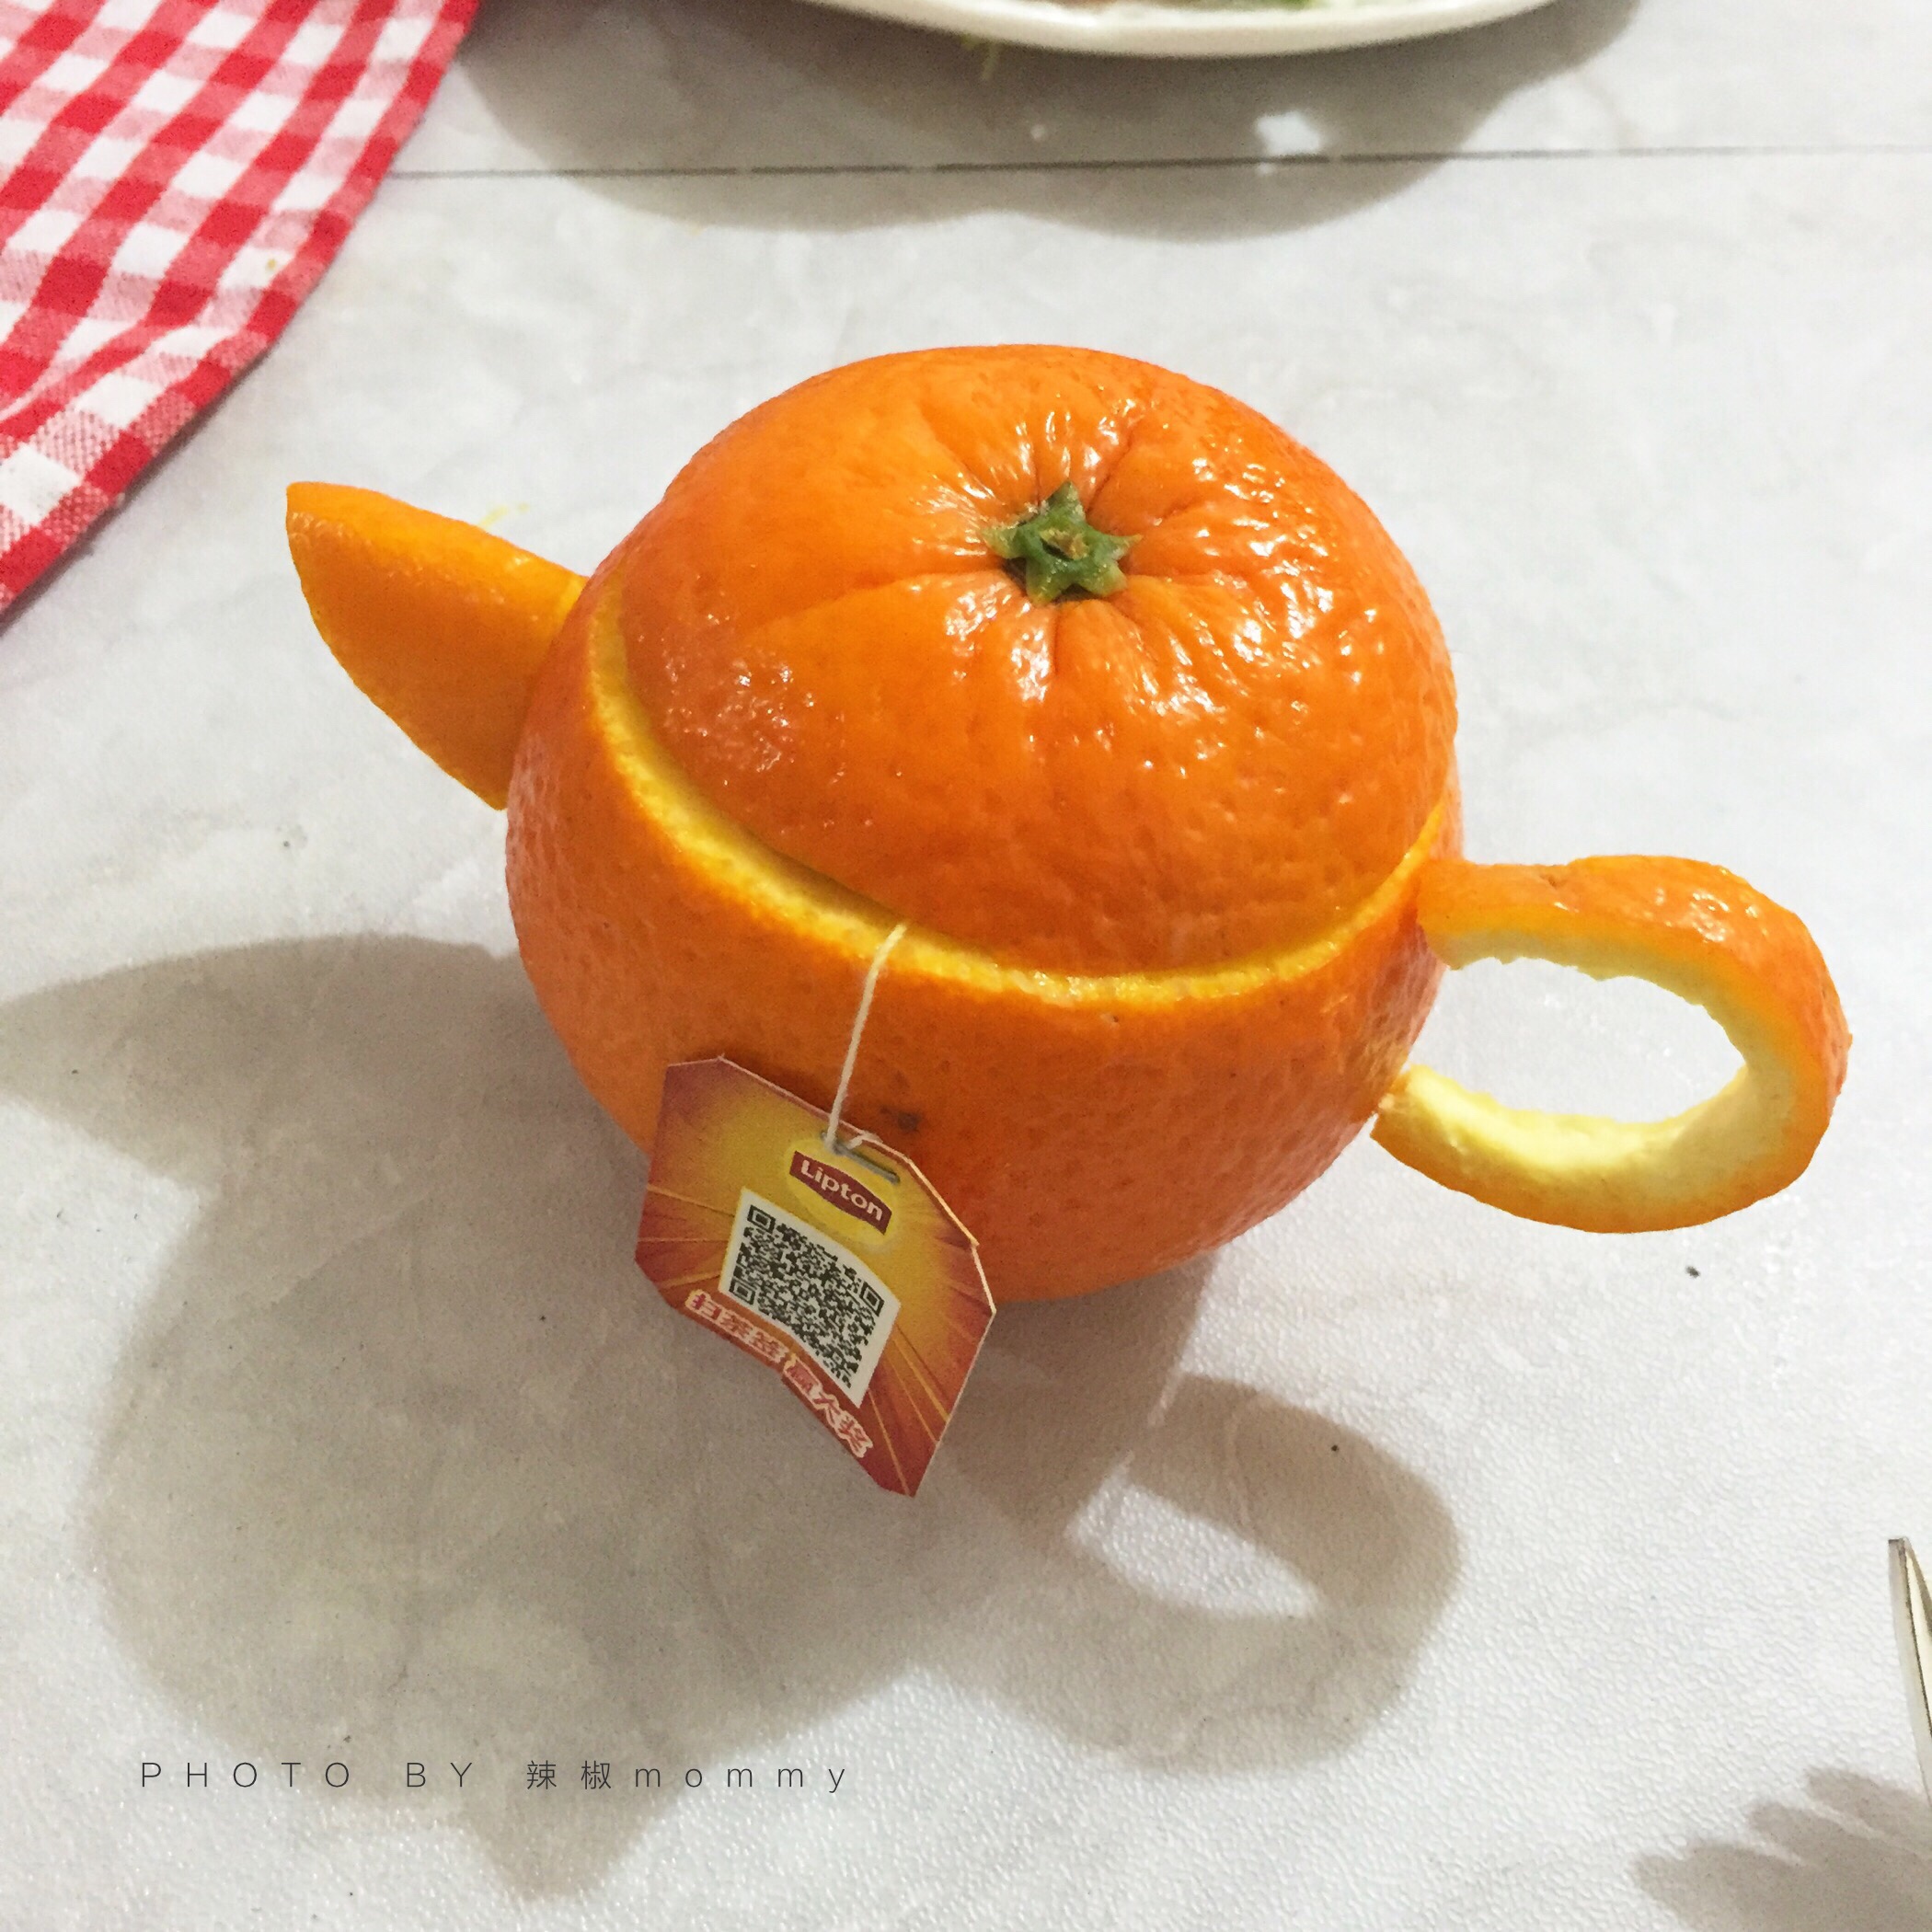 超萌的橙子茶壶